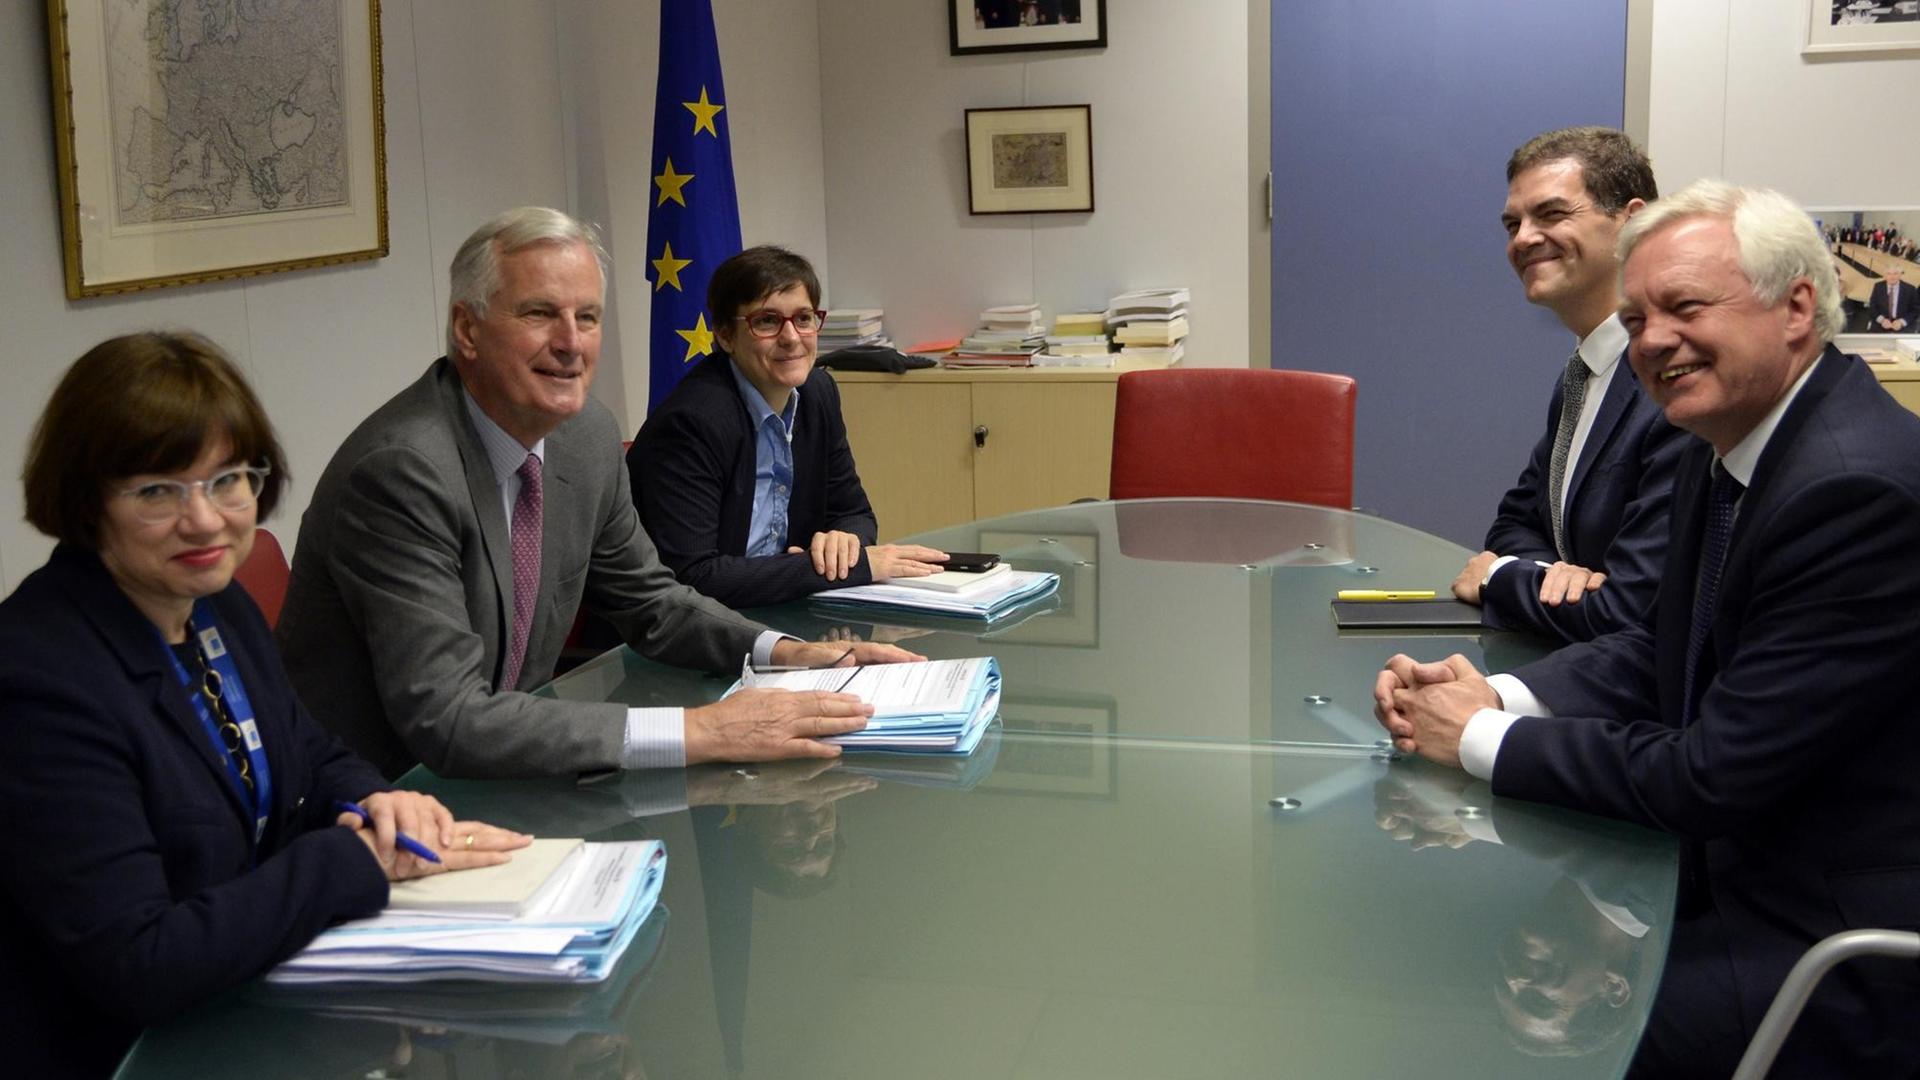 Brexit-Minister David David (rechts) und EU-Chefunterhändler Michel Barnier (2. von links) während eines Treffens bei der EU-Kommission in Brüssel am 17.7.2017. Links vorne die stellvertretende EU-Chefunterhändlerin, die Deutsche Sabine Weyand.